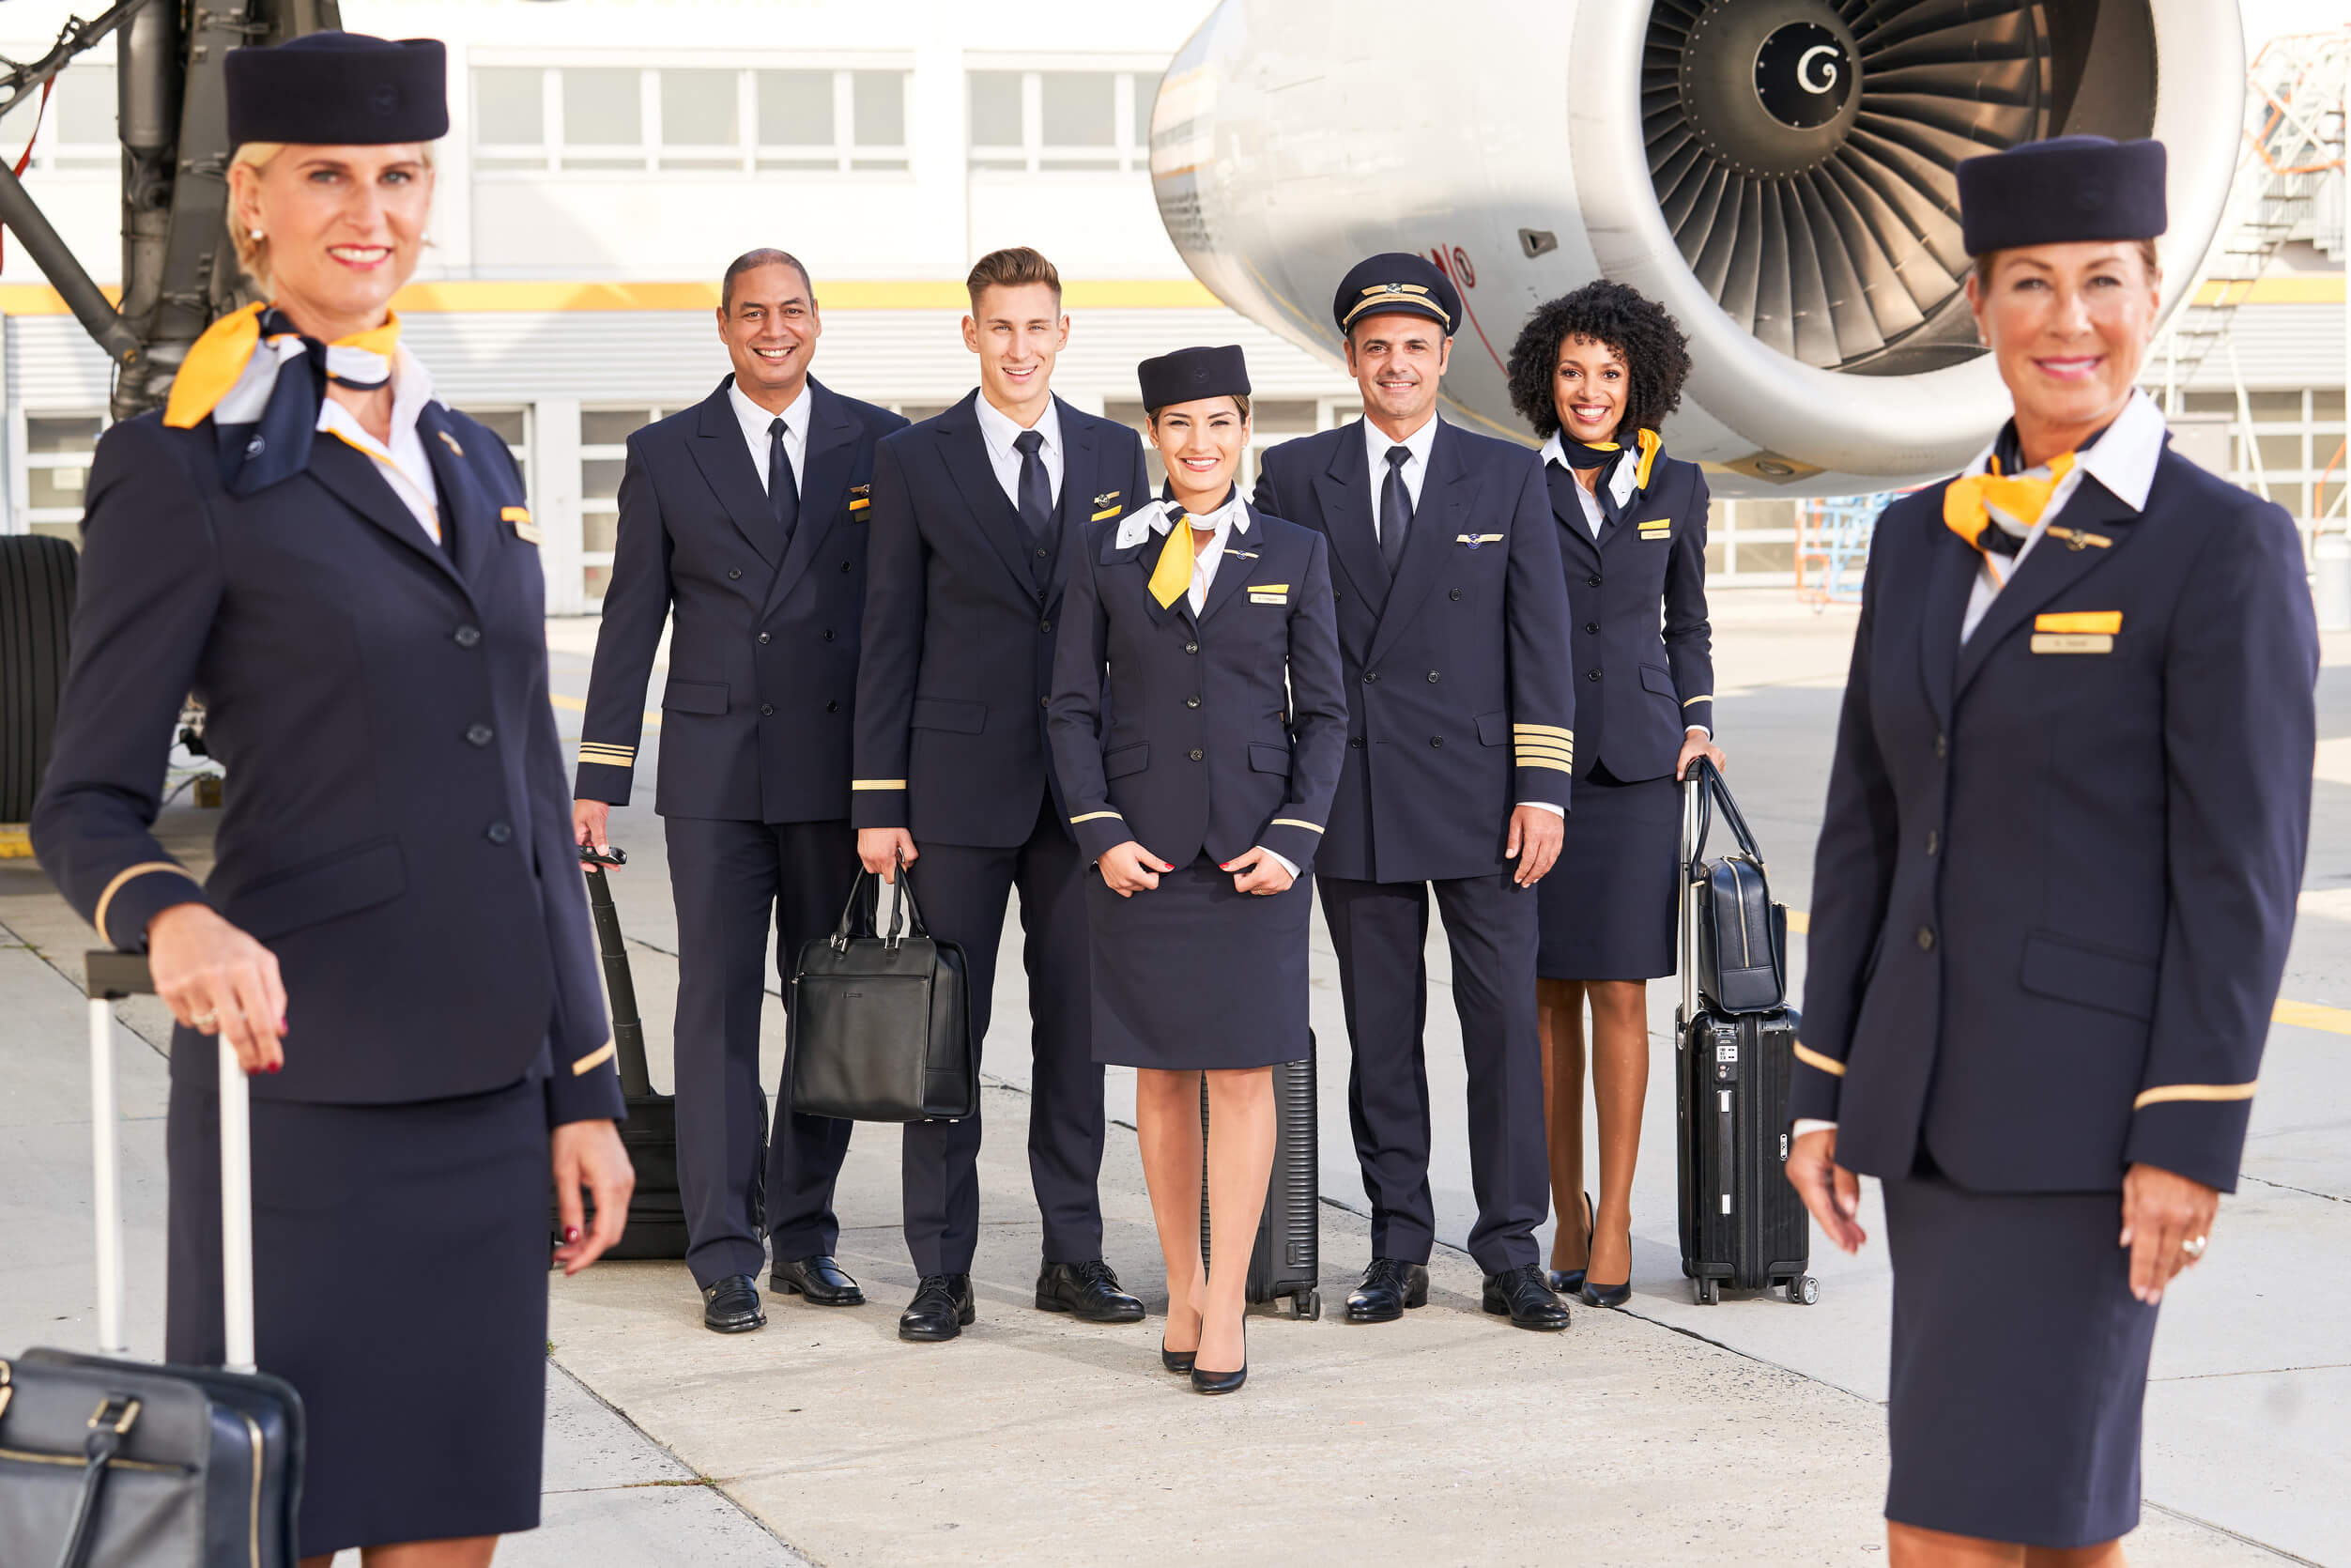 Lufthansa Group náborem reaguje na zvyšující se poptávku v letectví